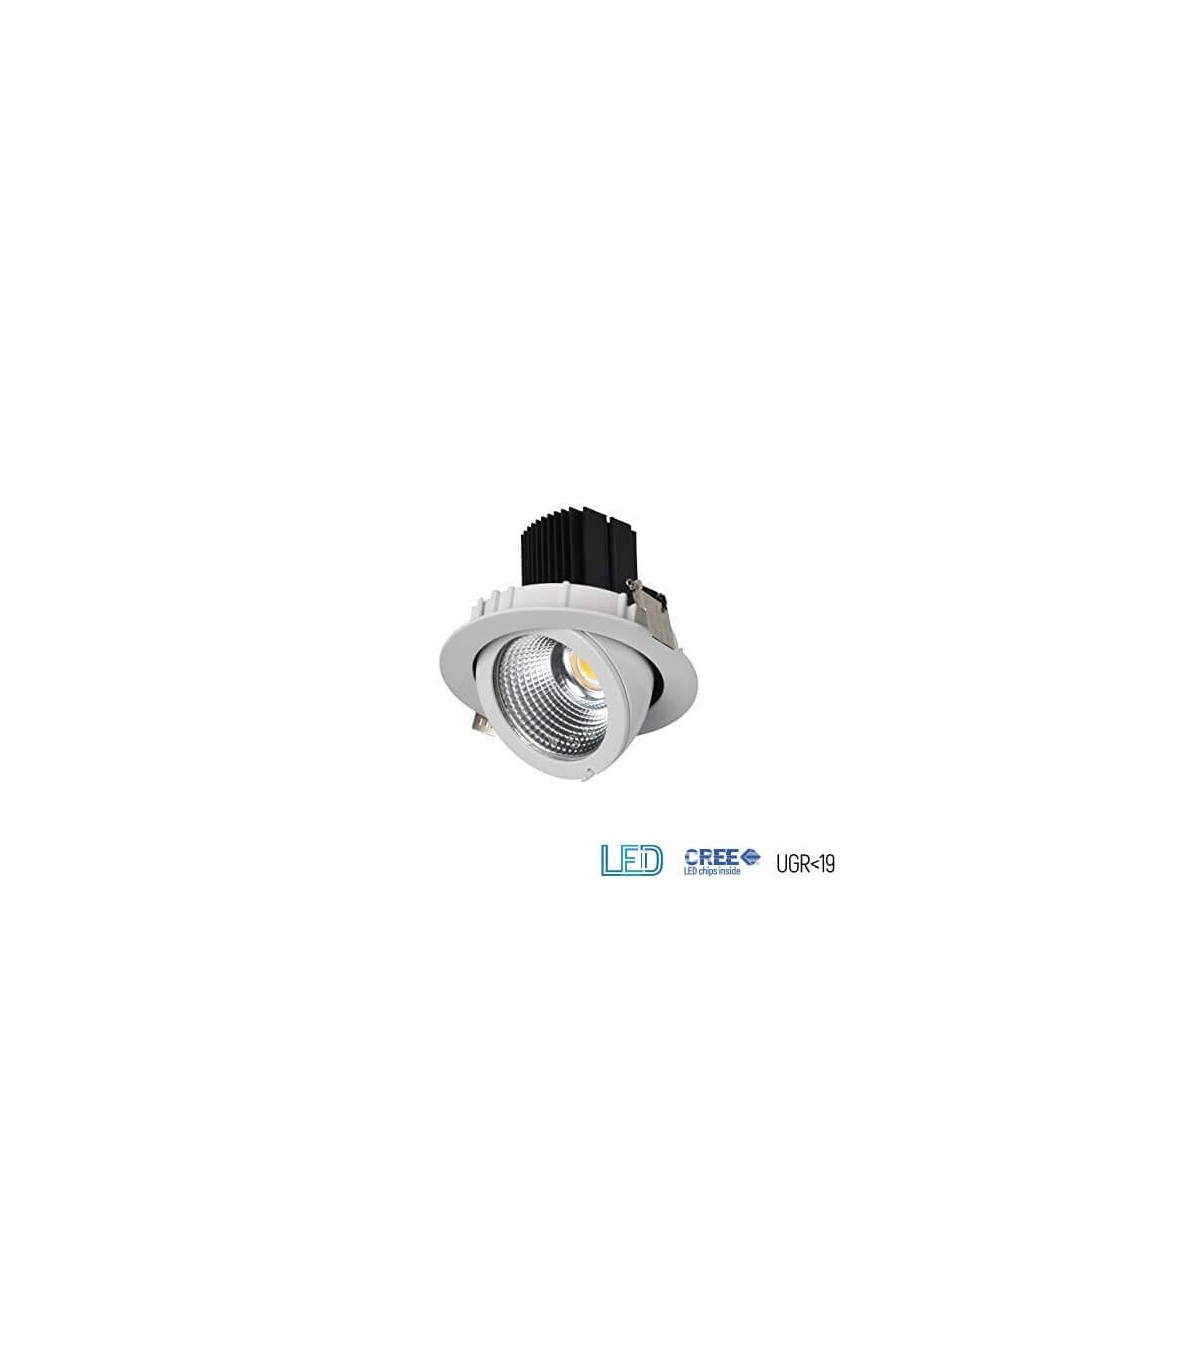 Spot encastrable LED IP65 noir dimmable 24W diamètre 190mm